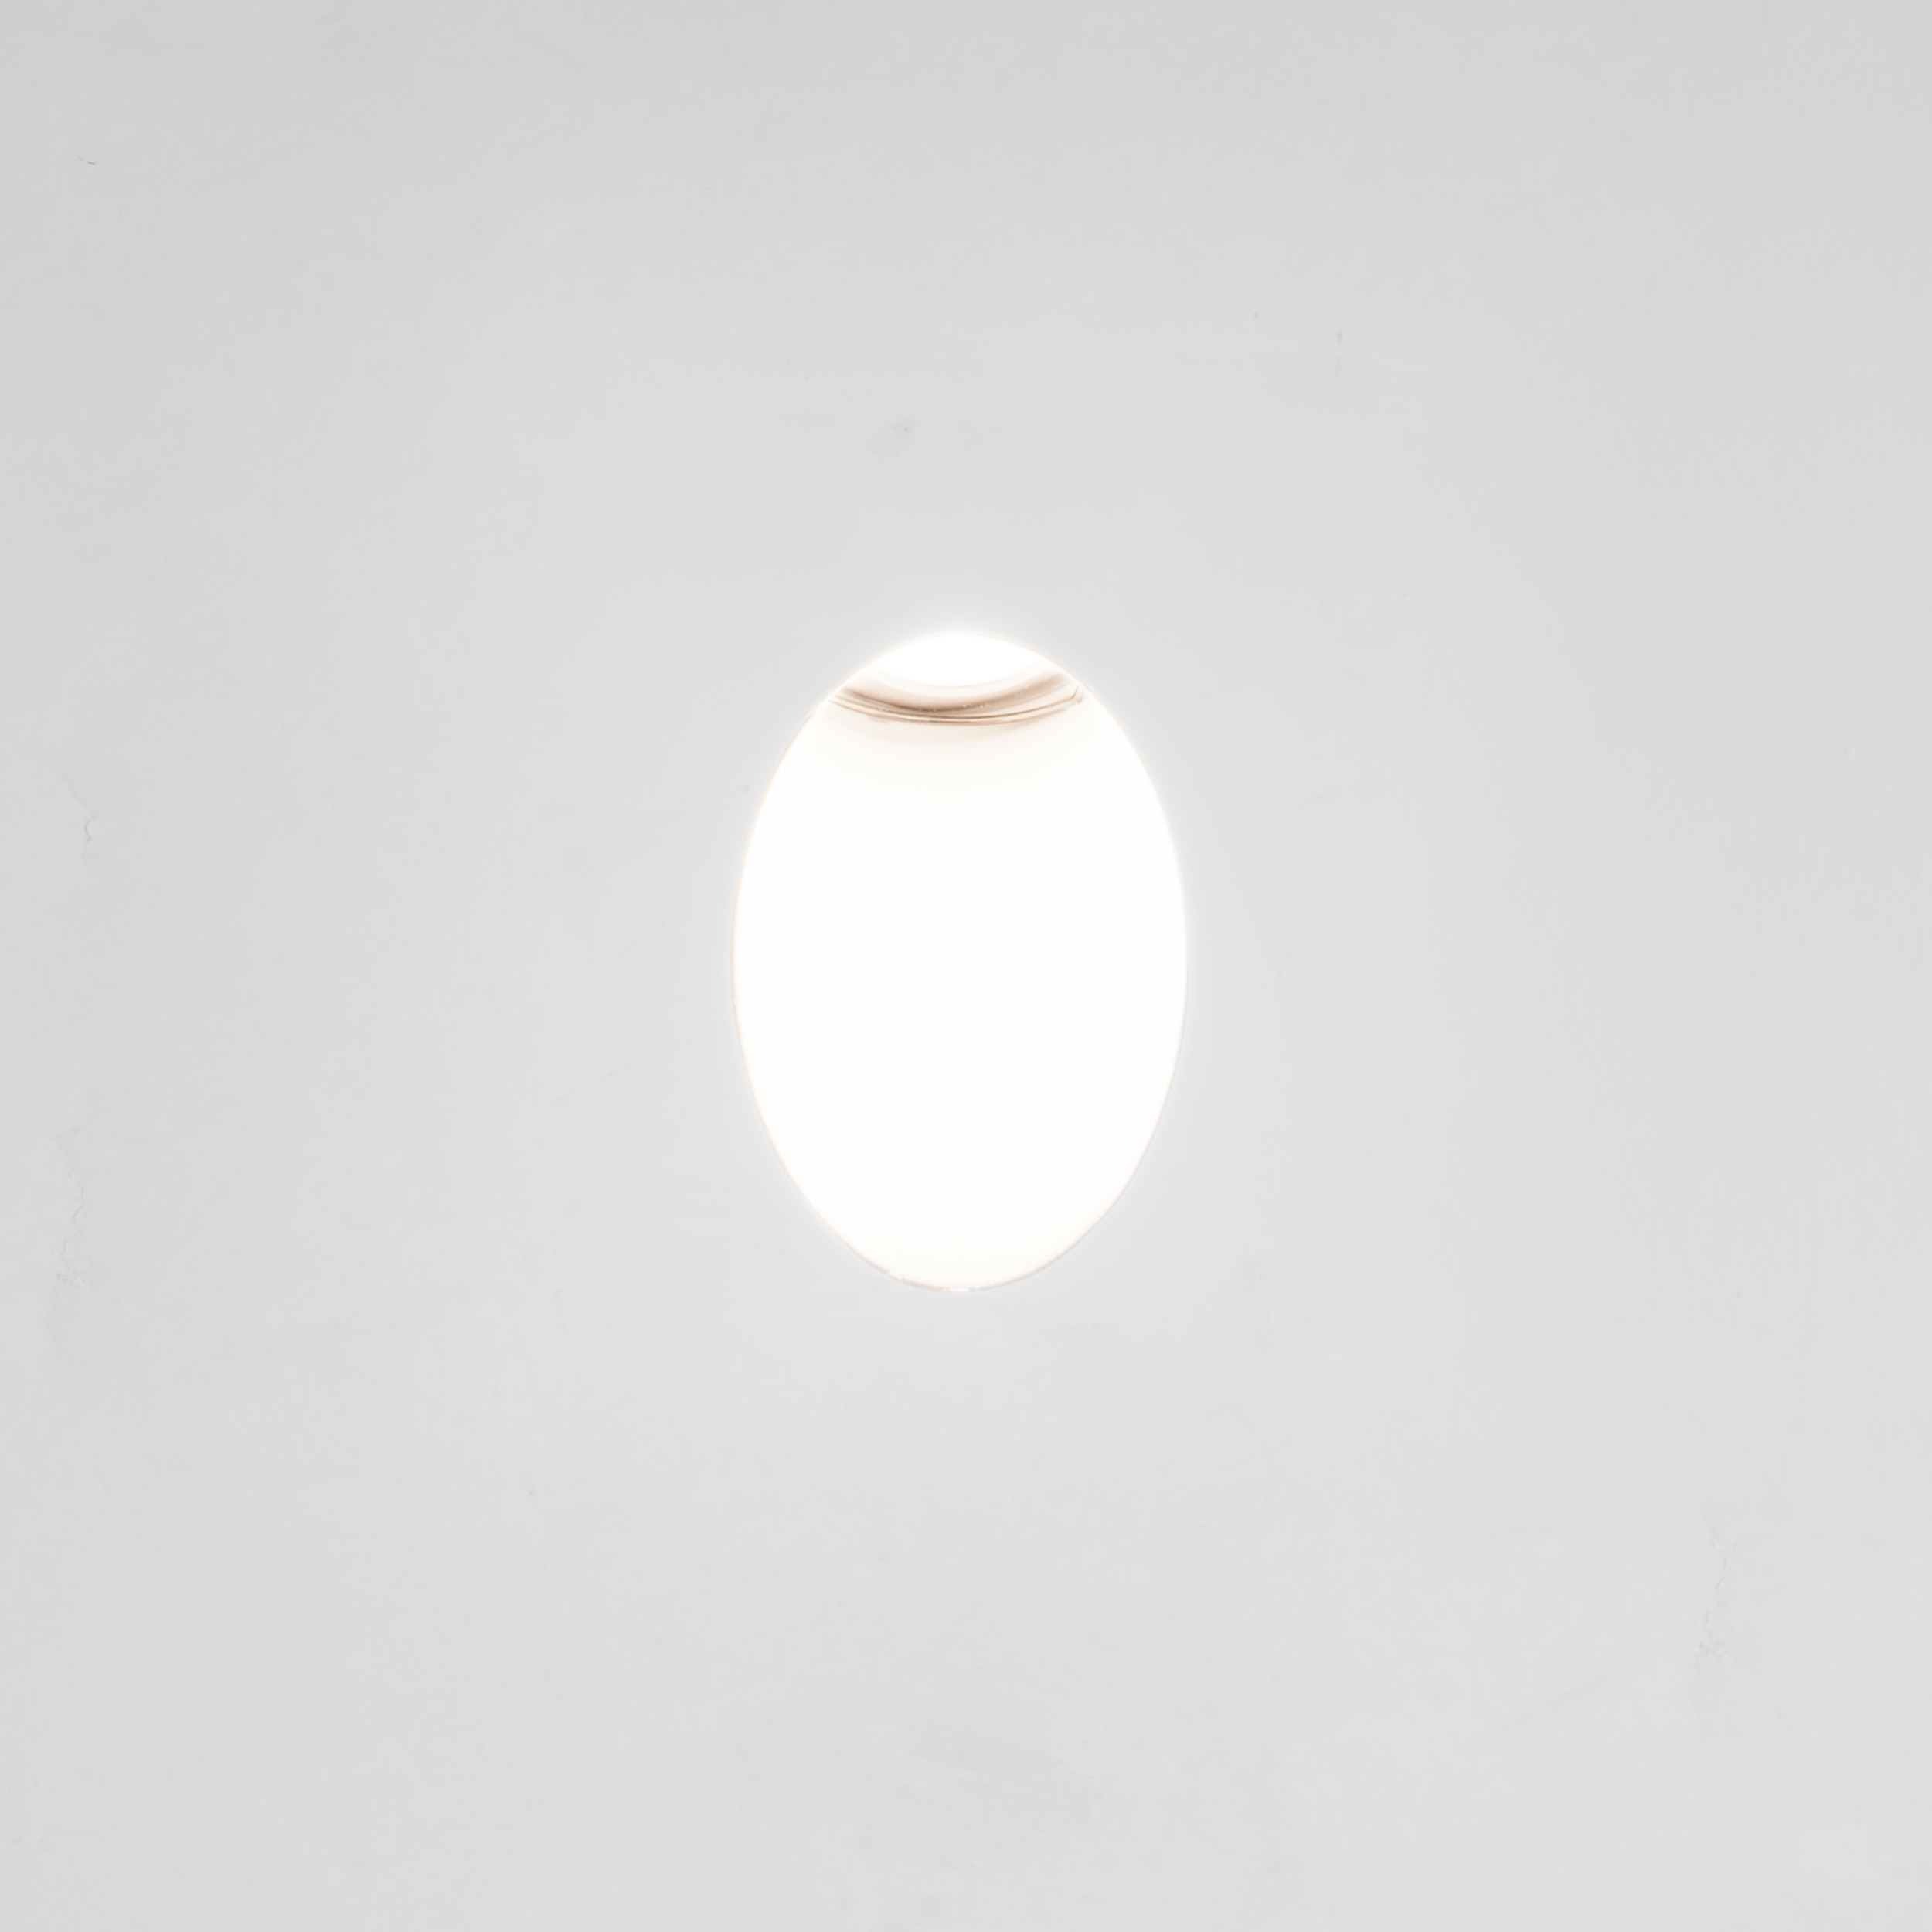 Встраиваемый настенный светодиодный светильник Astro Leros Trimless LED 1342002 (7418), LED 1W 2700K 35.6lm CRI80, белый, металл - фото 1